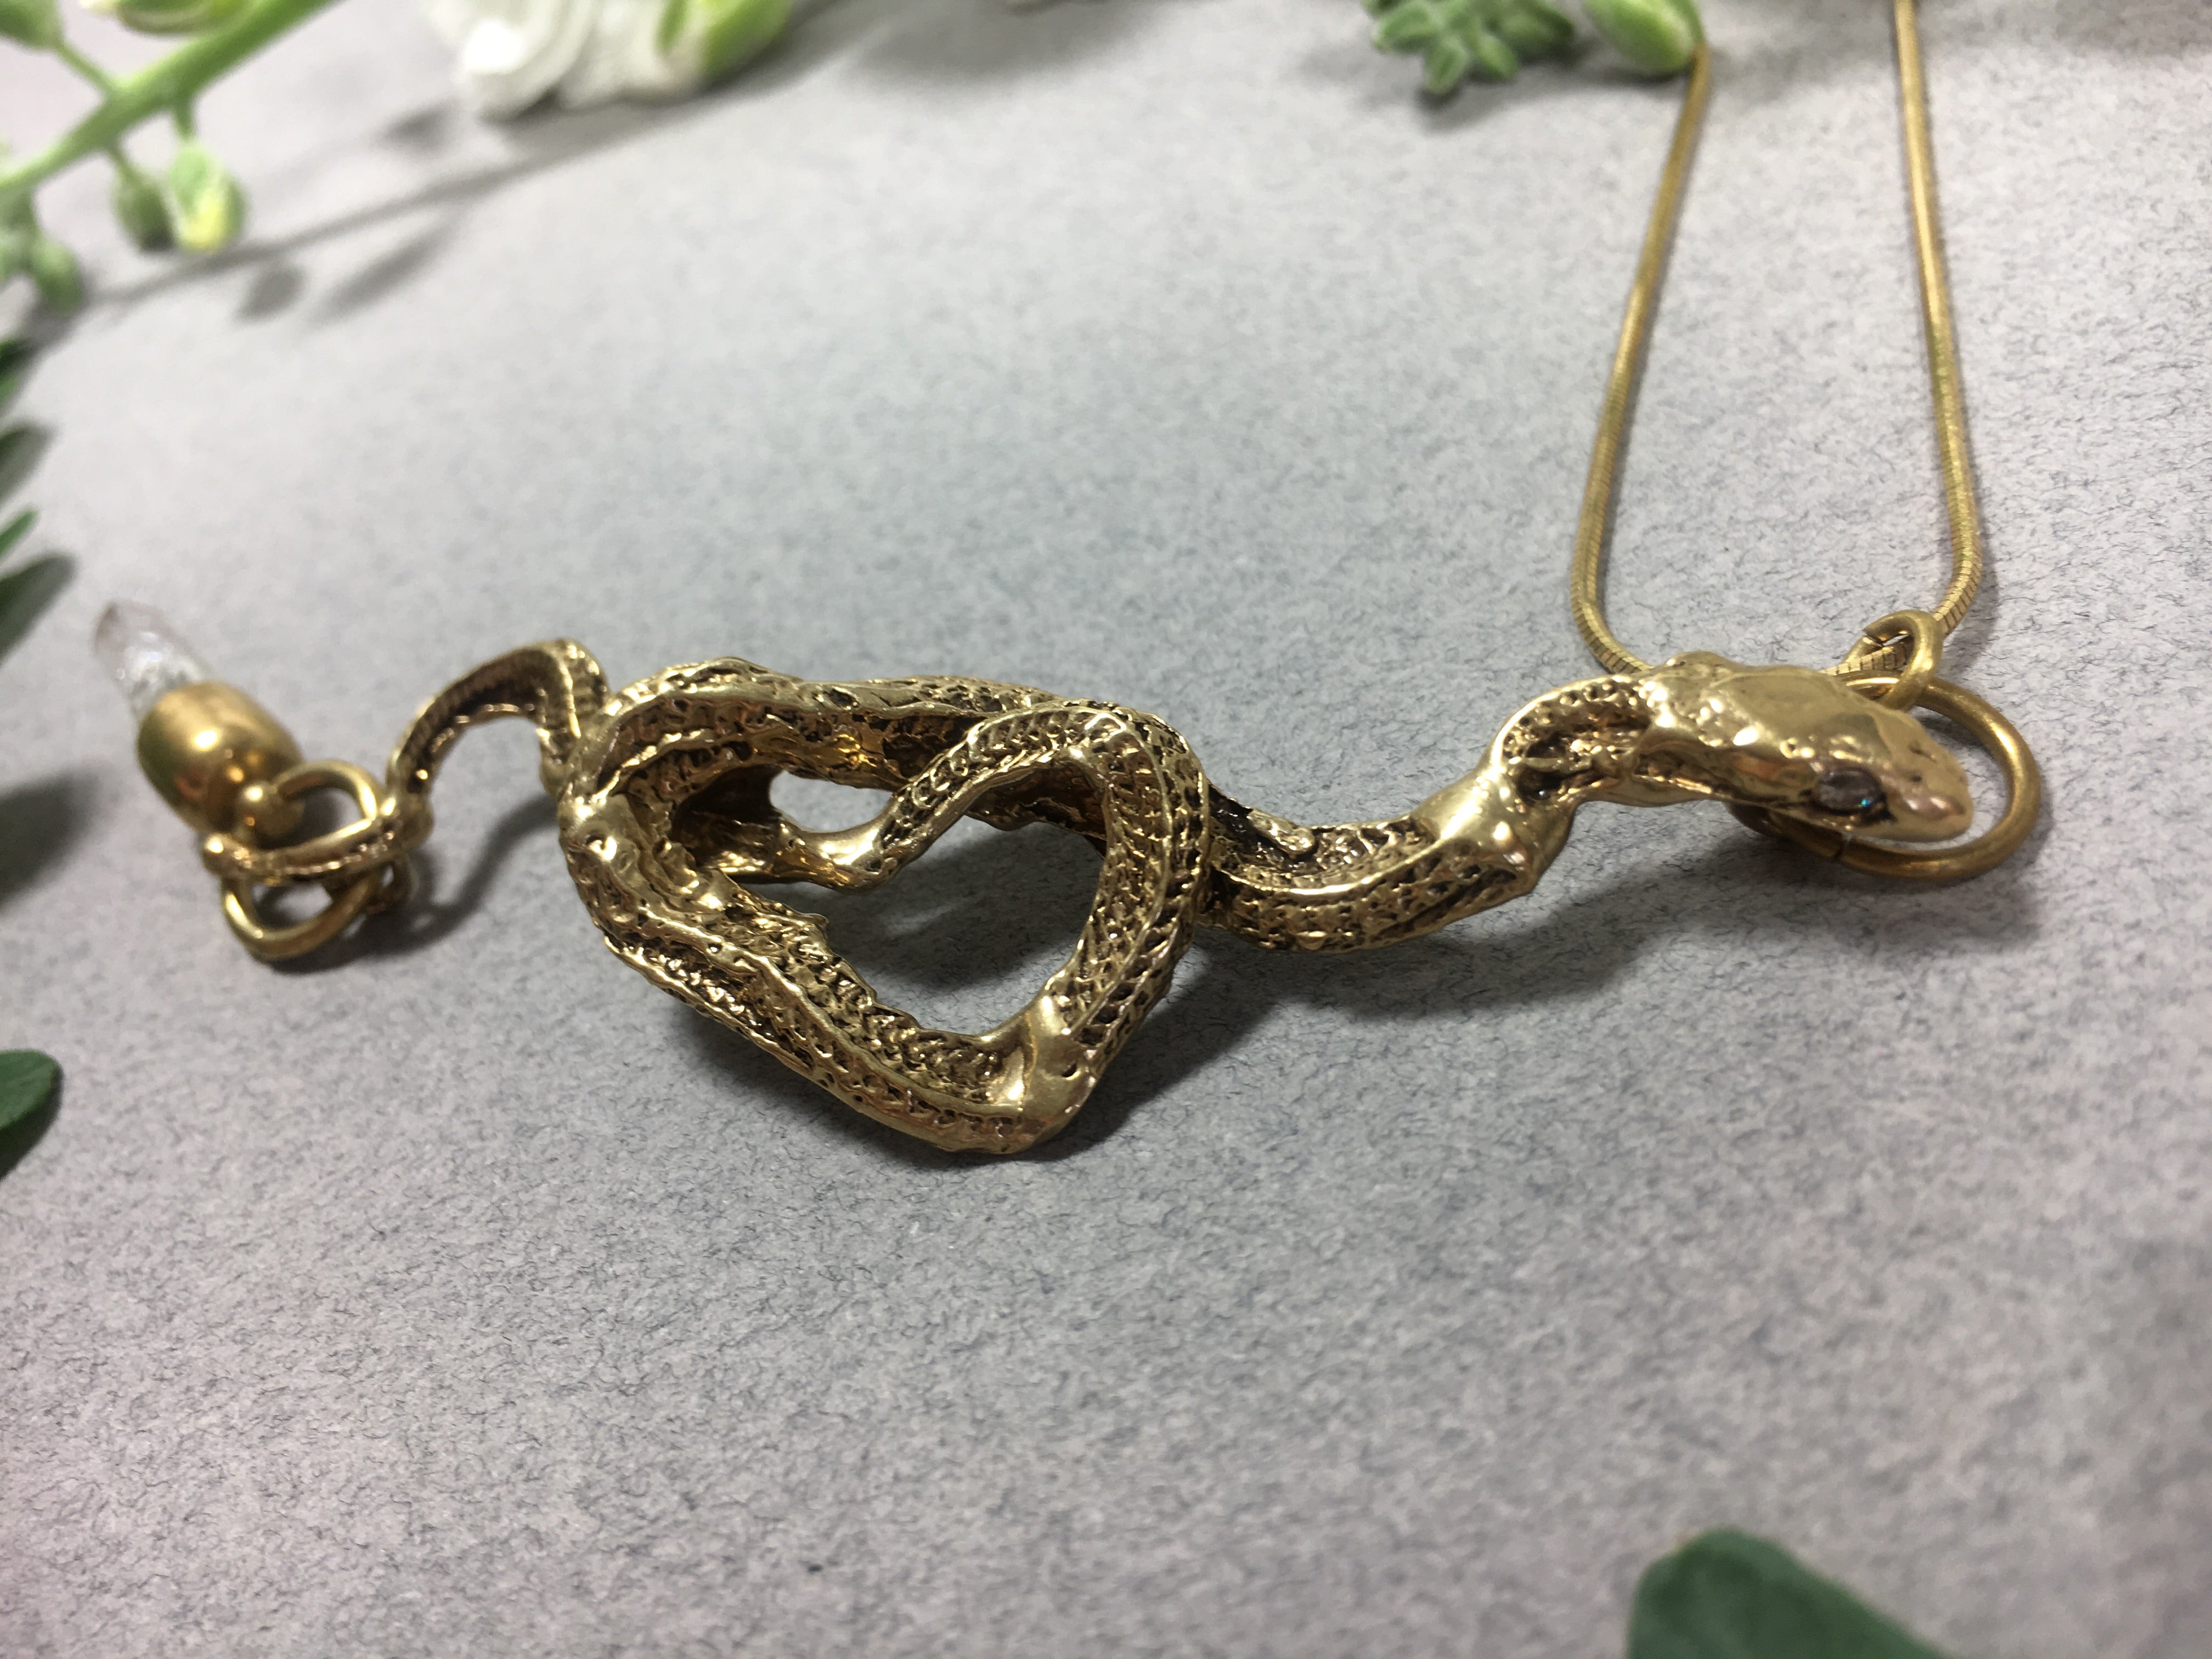 Snake pendant with onyx eyes